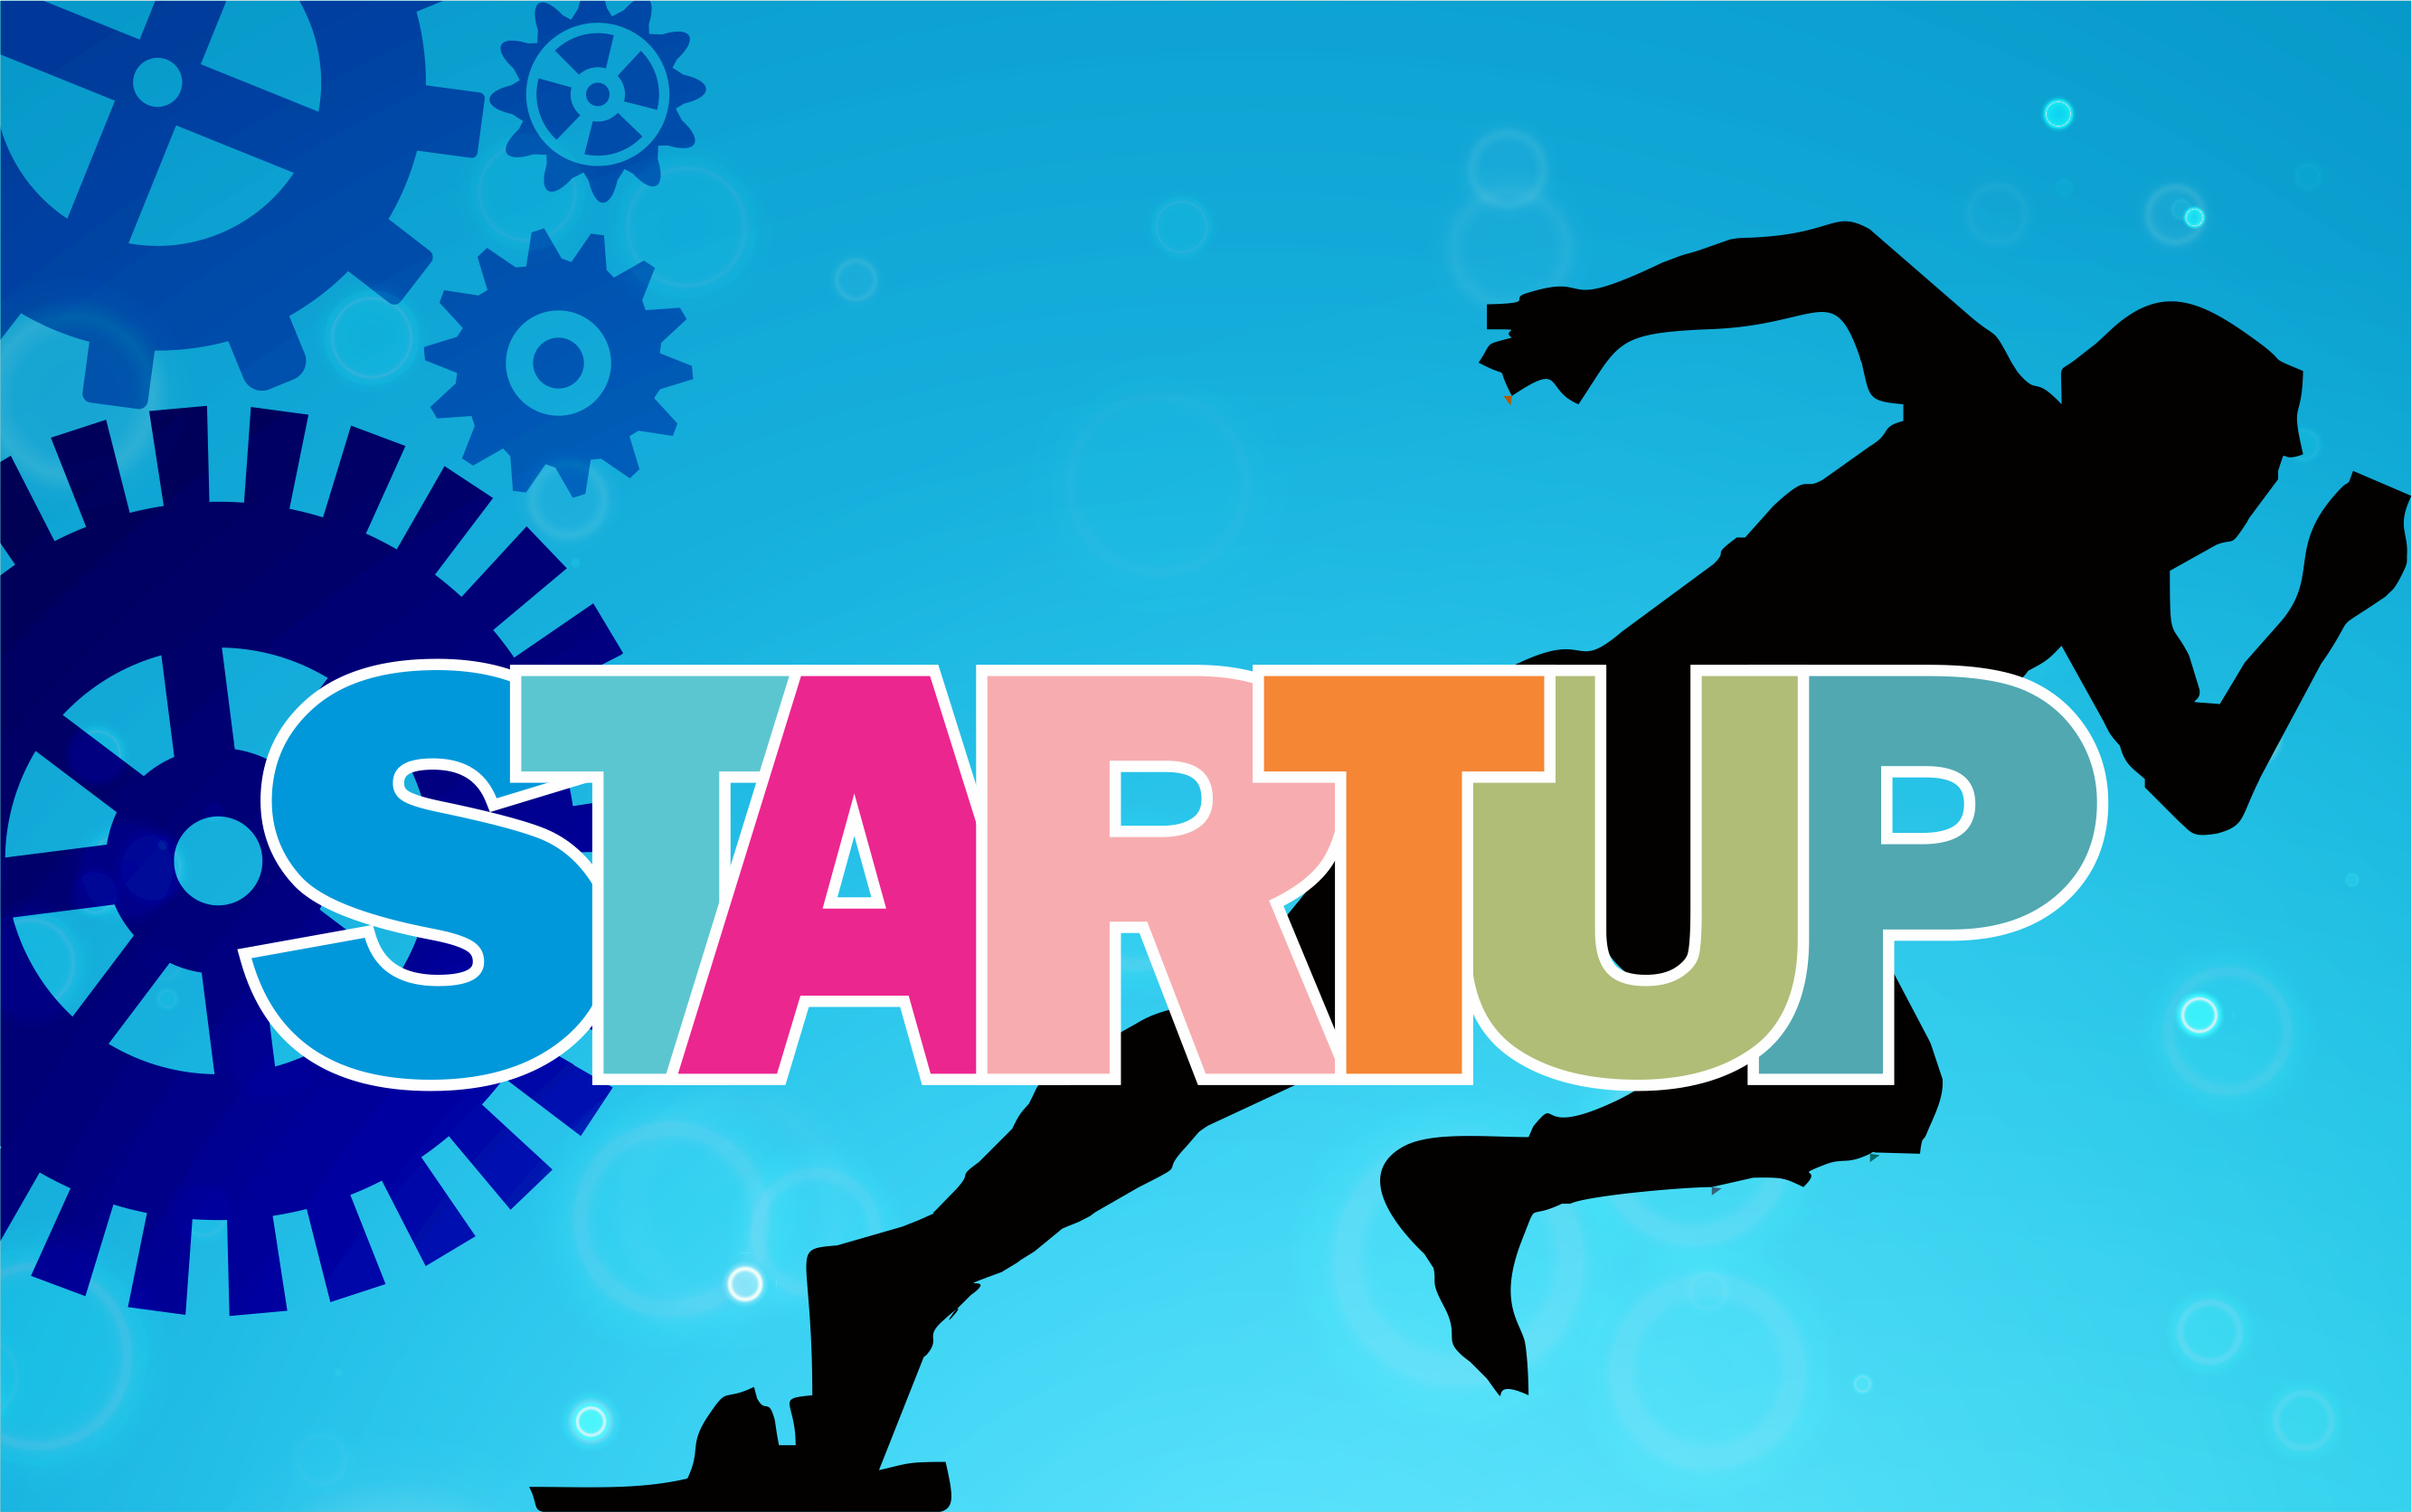 Promising Startups - I